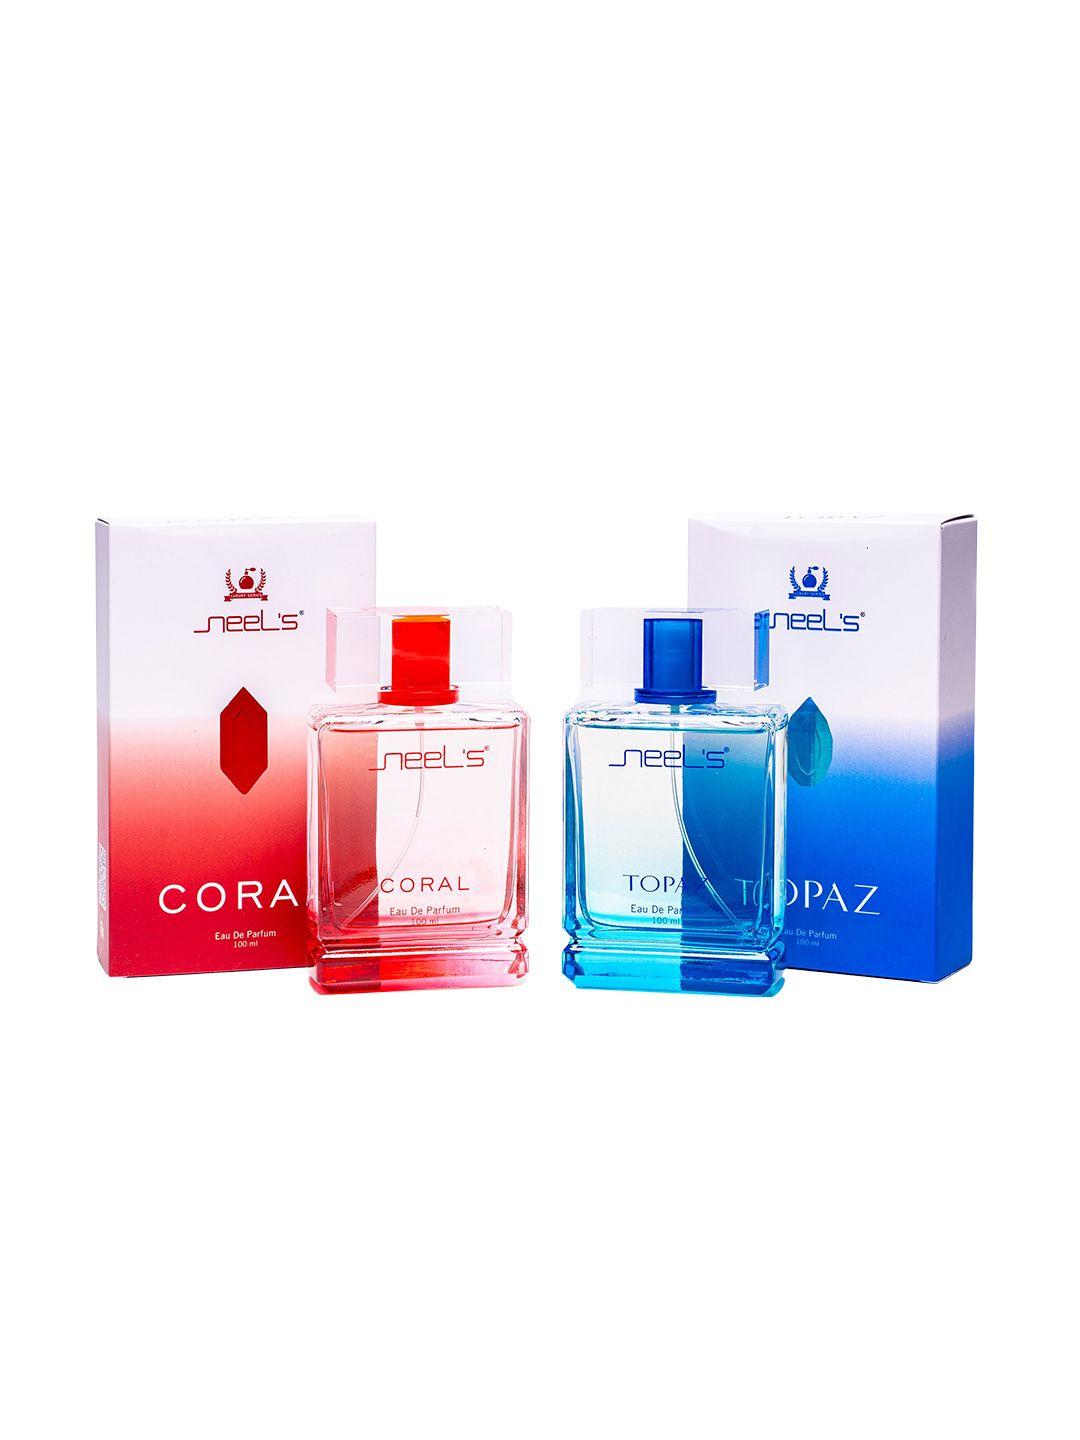 neels set of 2 eau de parfum 100ml each - topaz & coral